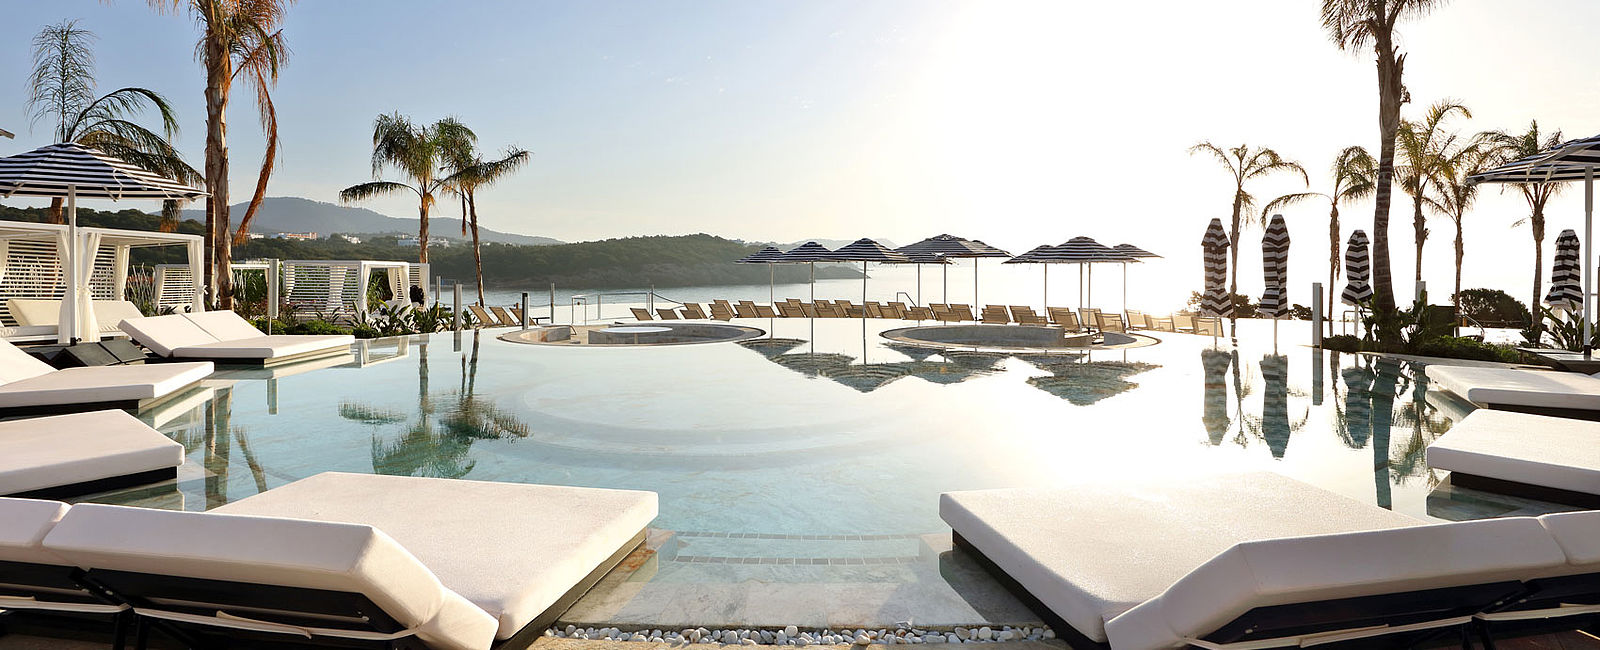 HOTELTEST
 Bless Hotel Ibiza 
 Hotspot für Hedonisten 